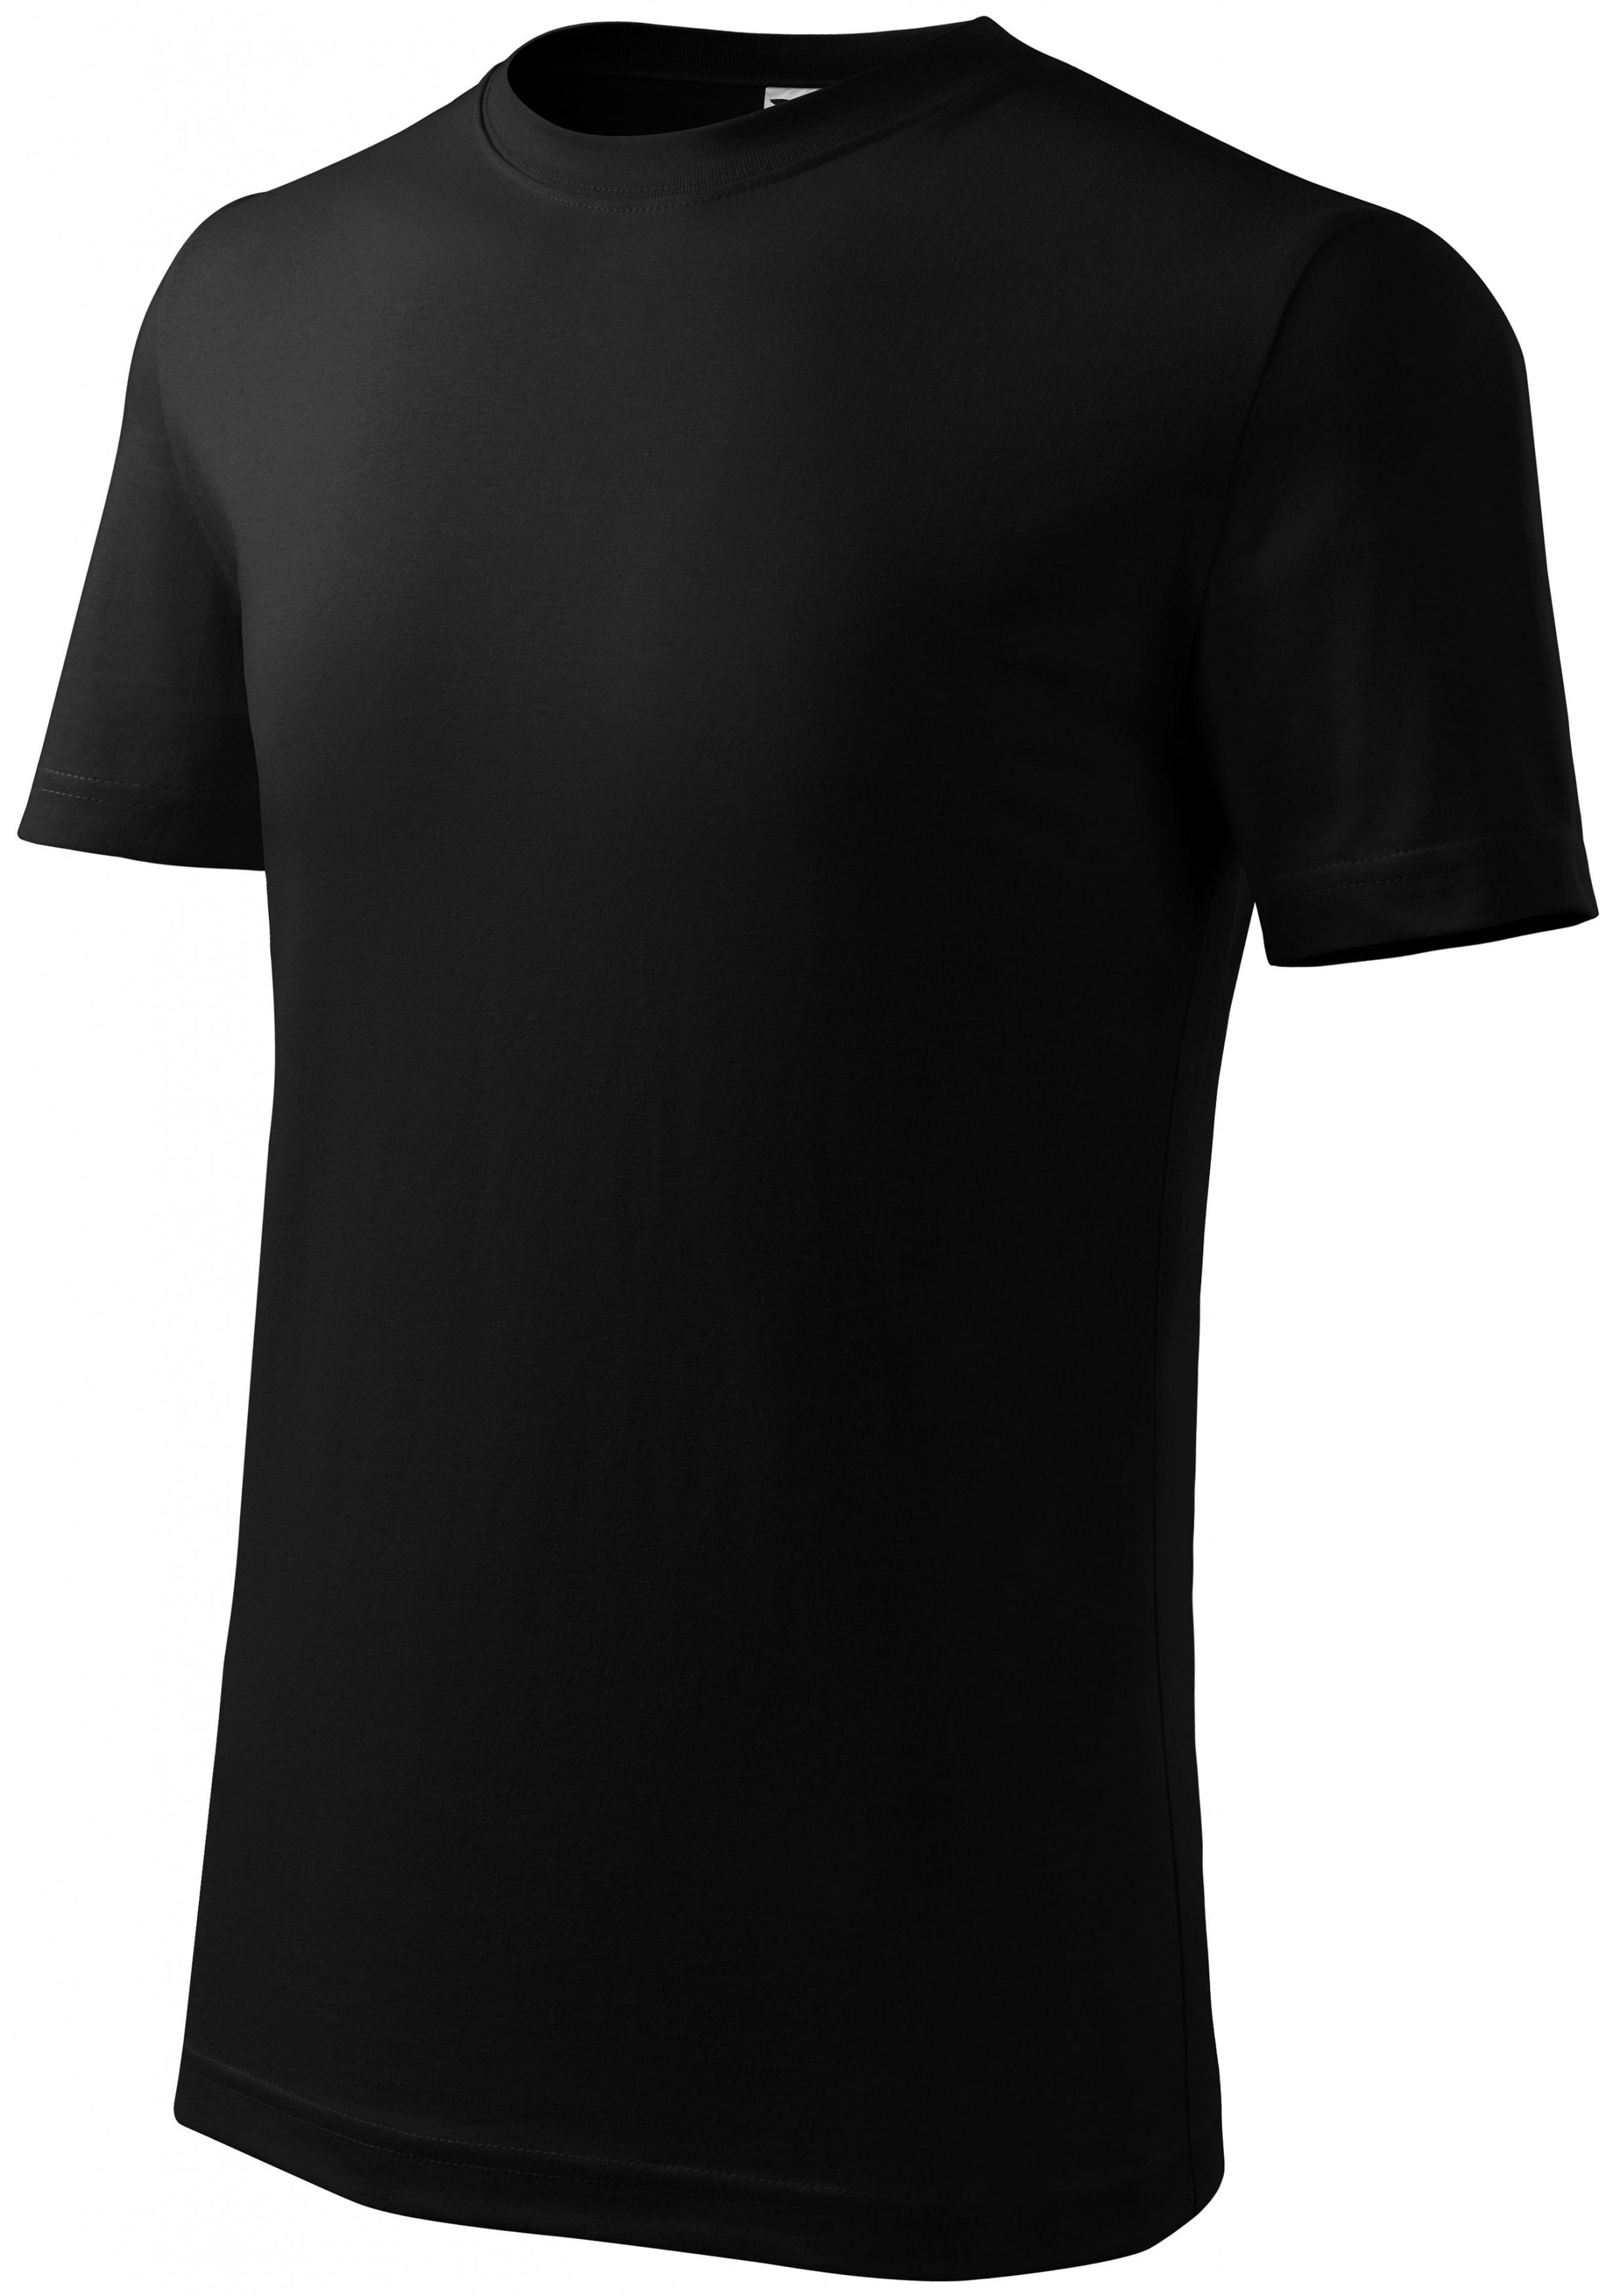 Detské tričko ľahšie, čierna, 146cm / 10rokov